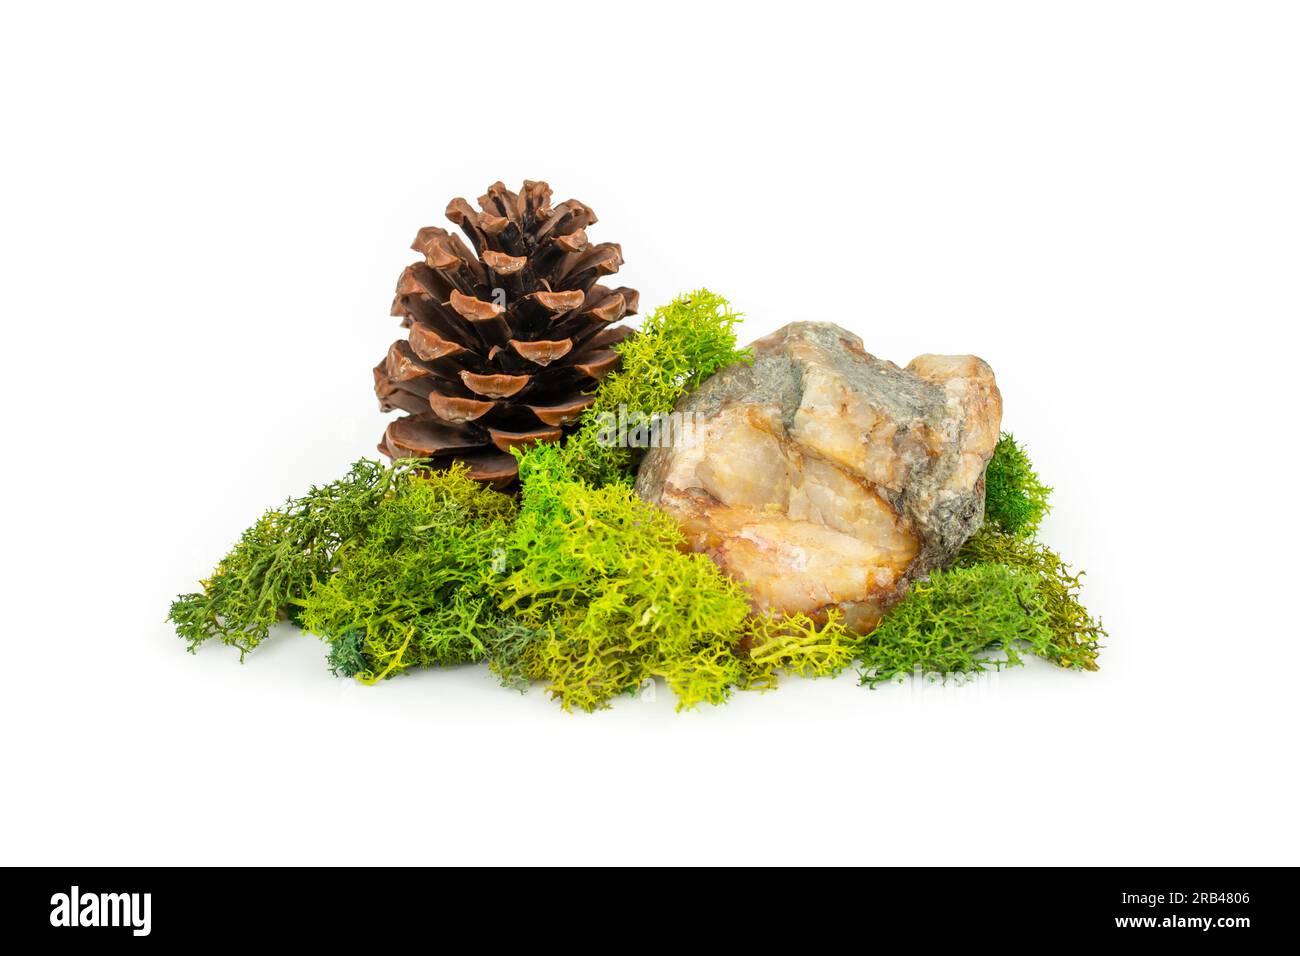 Stein mit grüner stabilisierter Flechte und Kiefernkegel, natürlicher Hintergrund für die Produktdarstellung, isoliert auf weißem Hintergrund Stockfoto